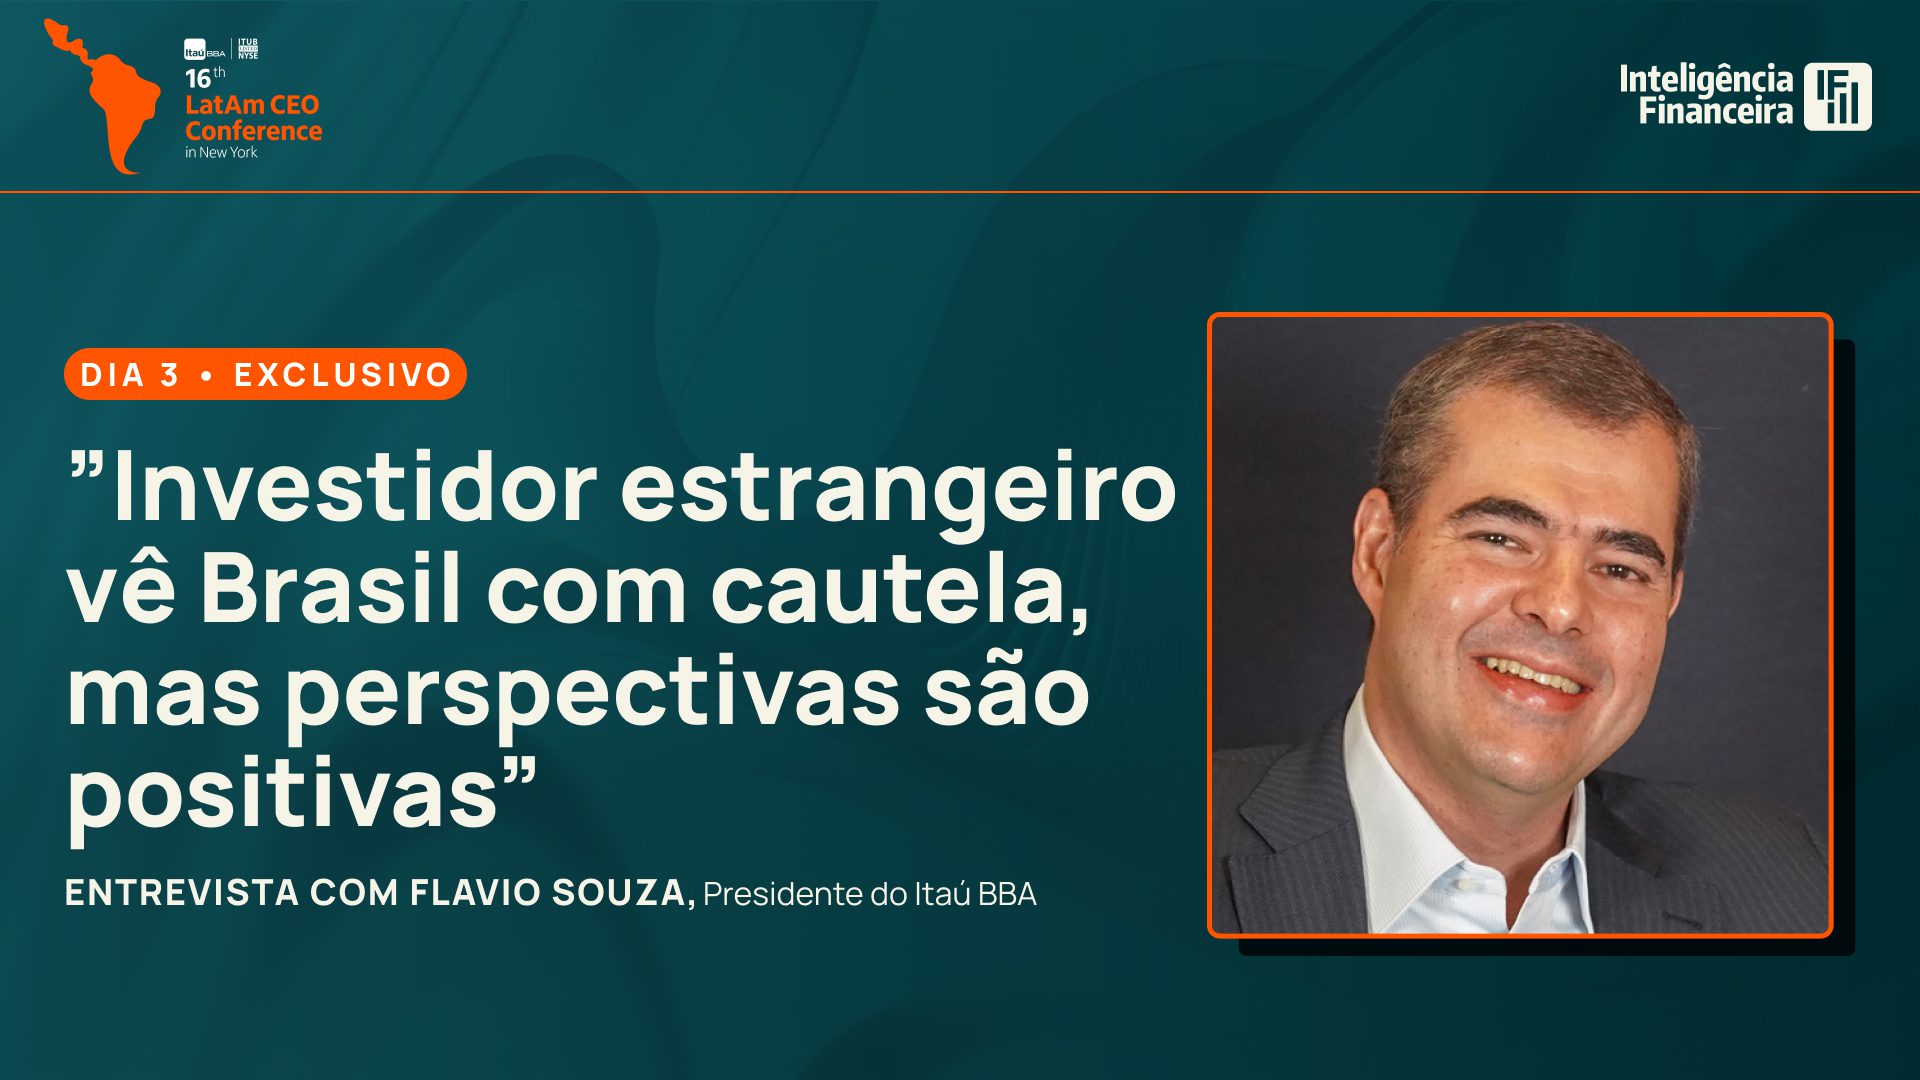 Estrangeiro vê Brasil com cautela no curto prazo, mas perspectivas são  positivas, diz Flávio Souza, CEO do Itaú BBA - Inteligência Financeira